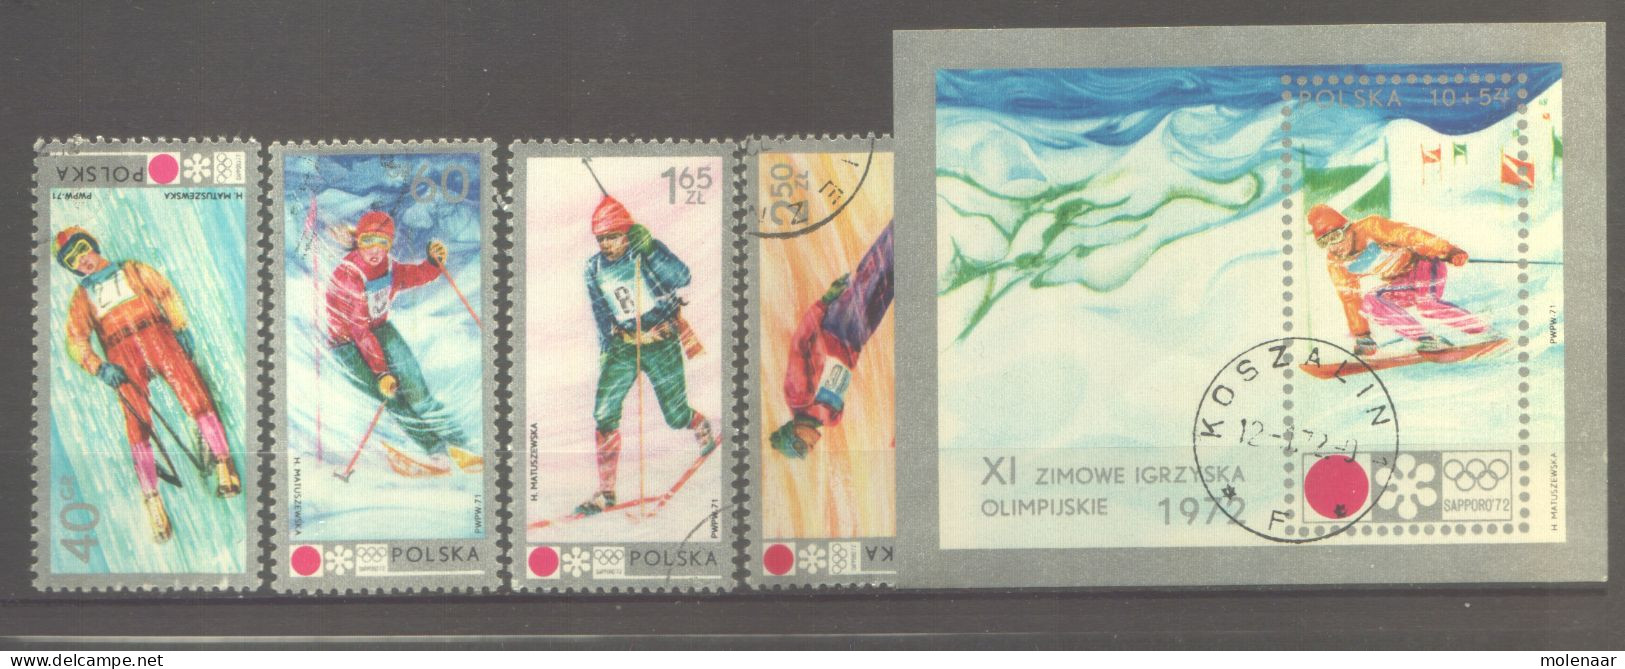 Postzegels > Europa > Polen > 1944-.... Republiek > 1971-80 > Gebruikt 2139-2143 (12065) - Oblitérés